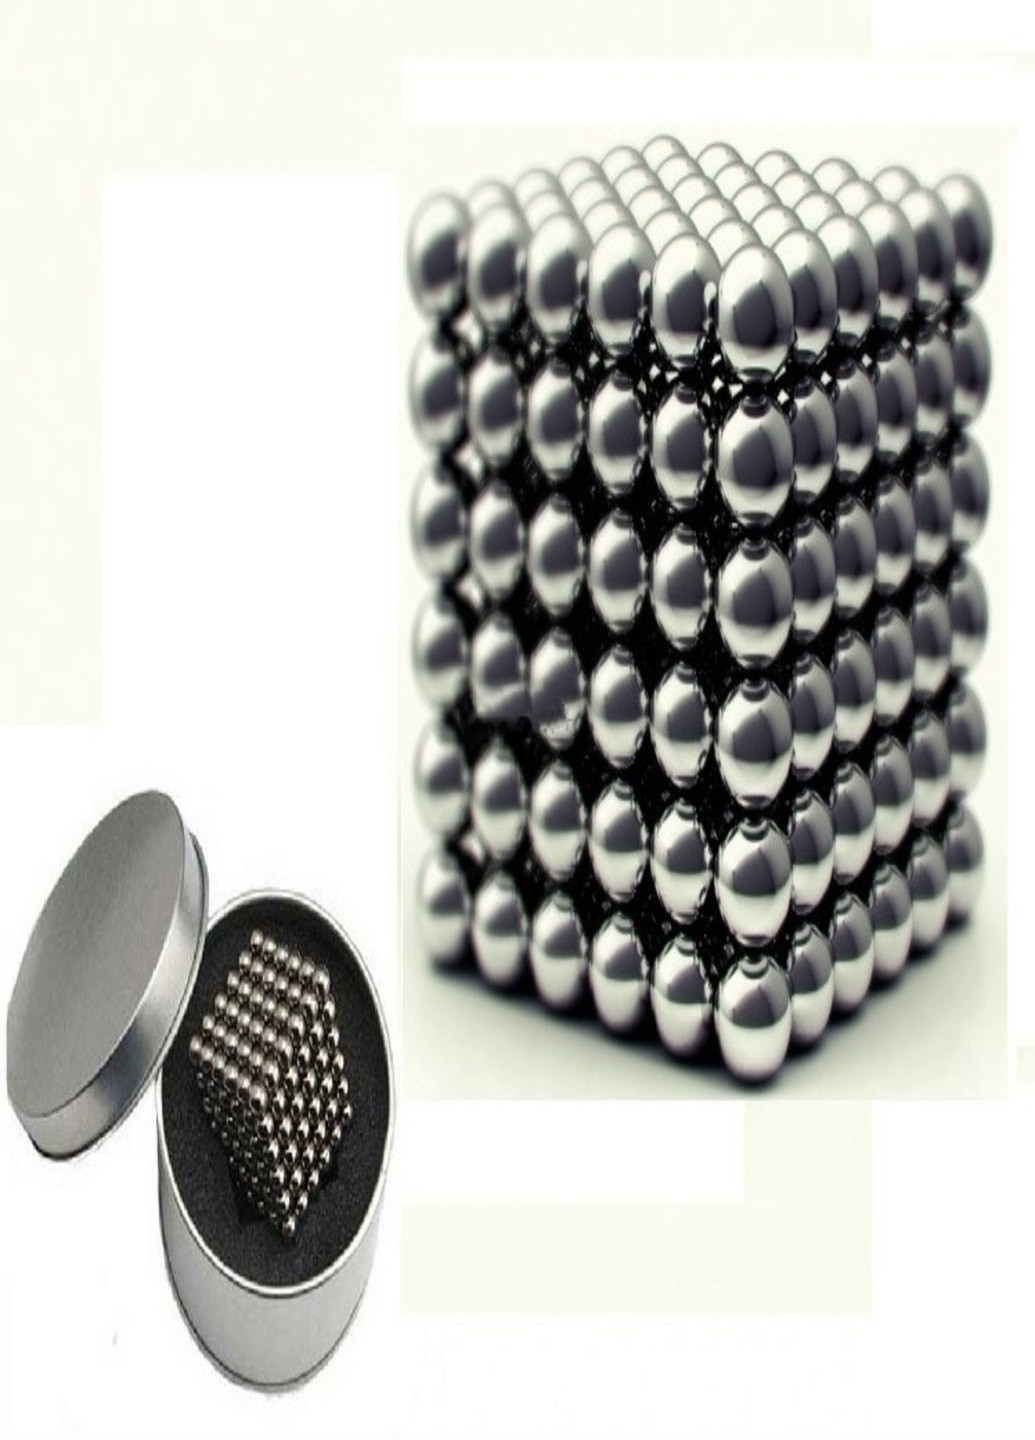 Магнитная игрушка головоломка конструктор антистресс Неокуб Neocube 216 шариков 5 мм (3308754) Francesco Marconi (215118434)